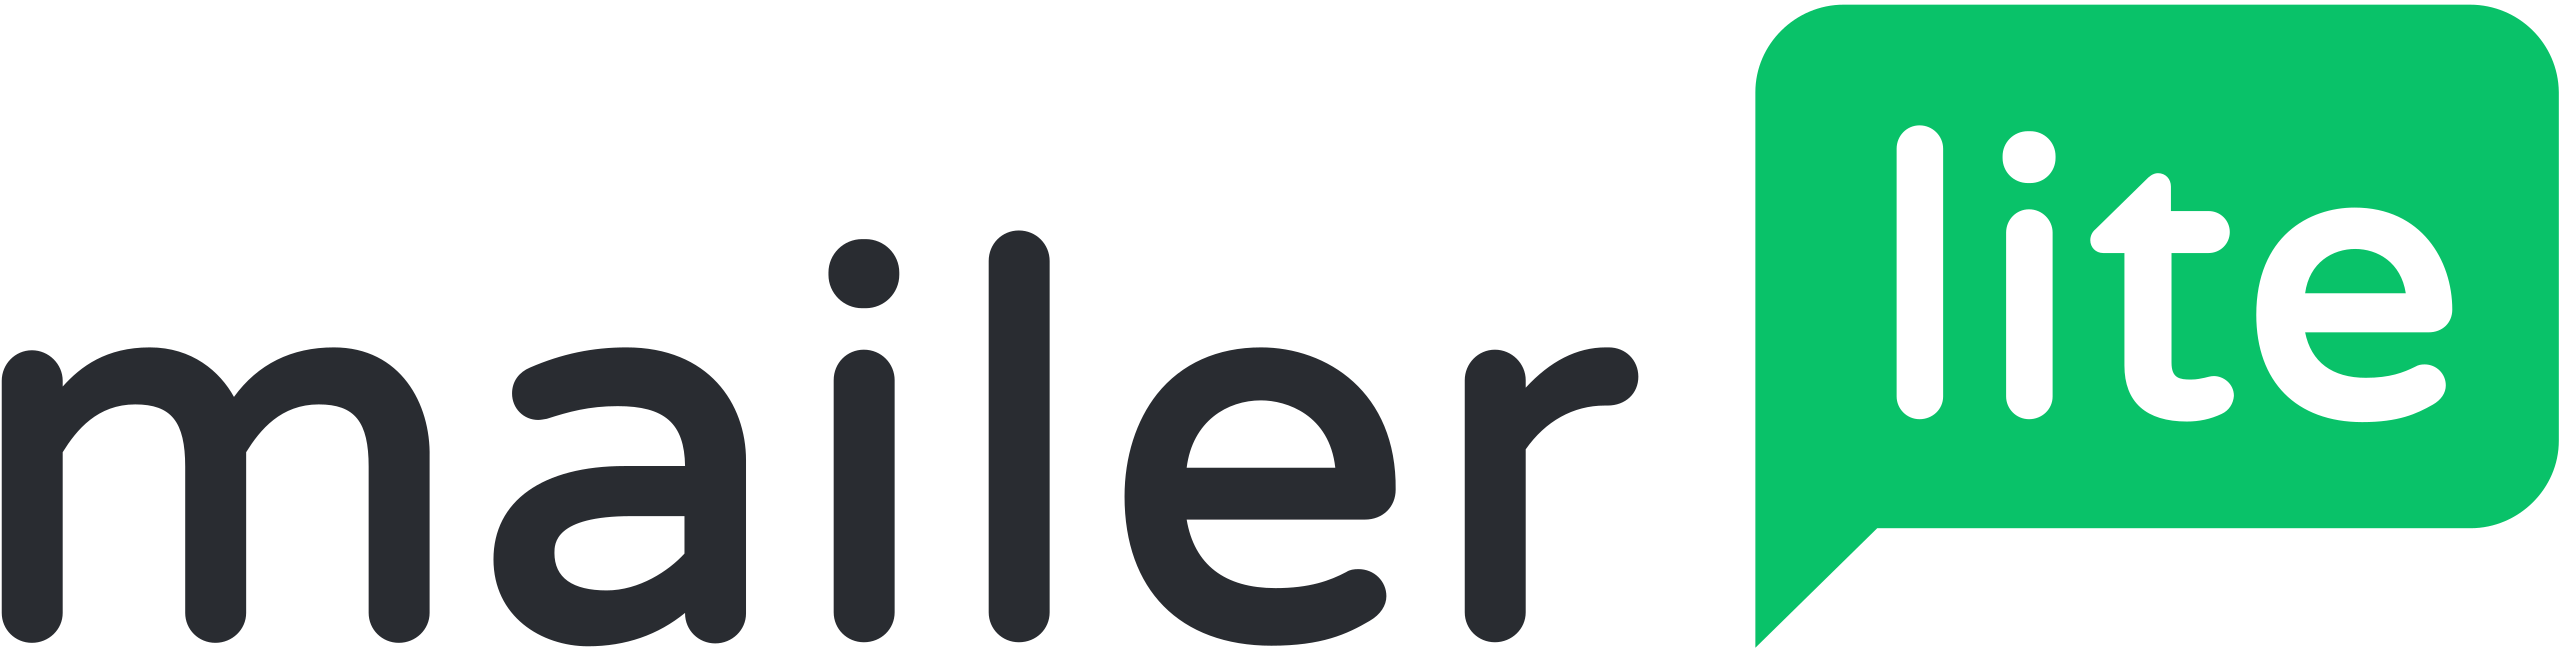 Mailerlite Logo